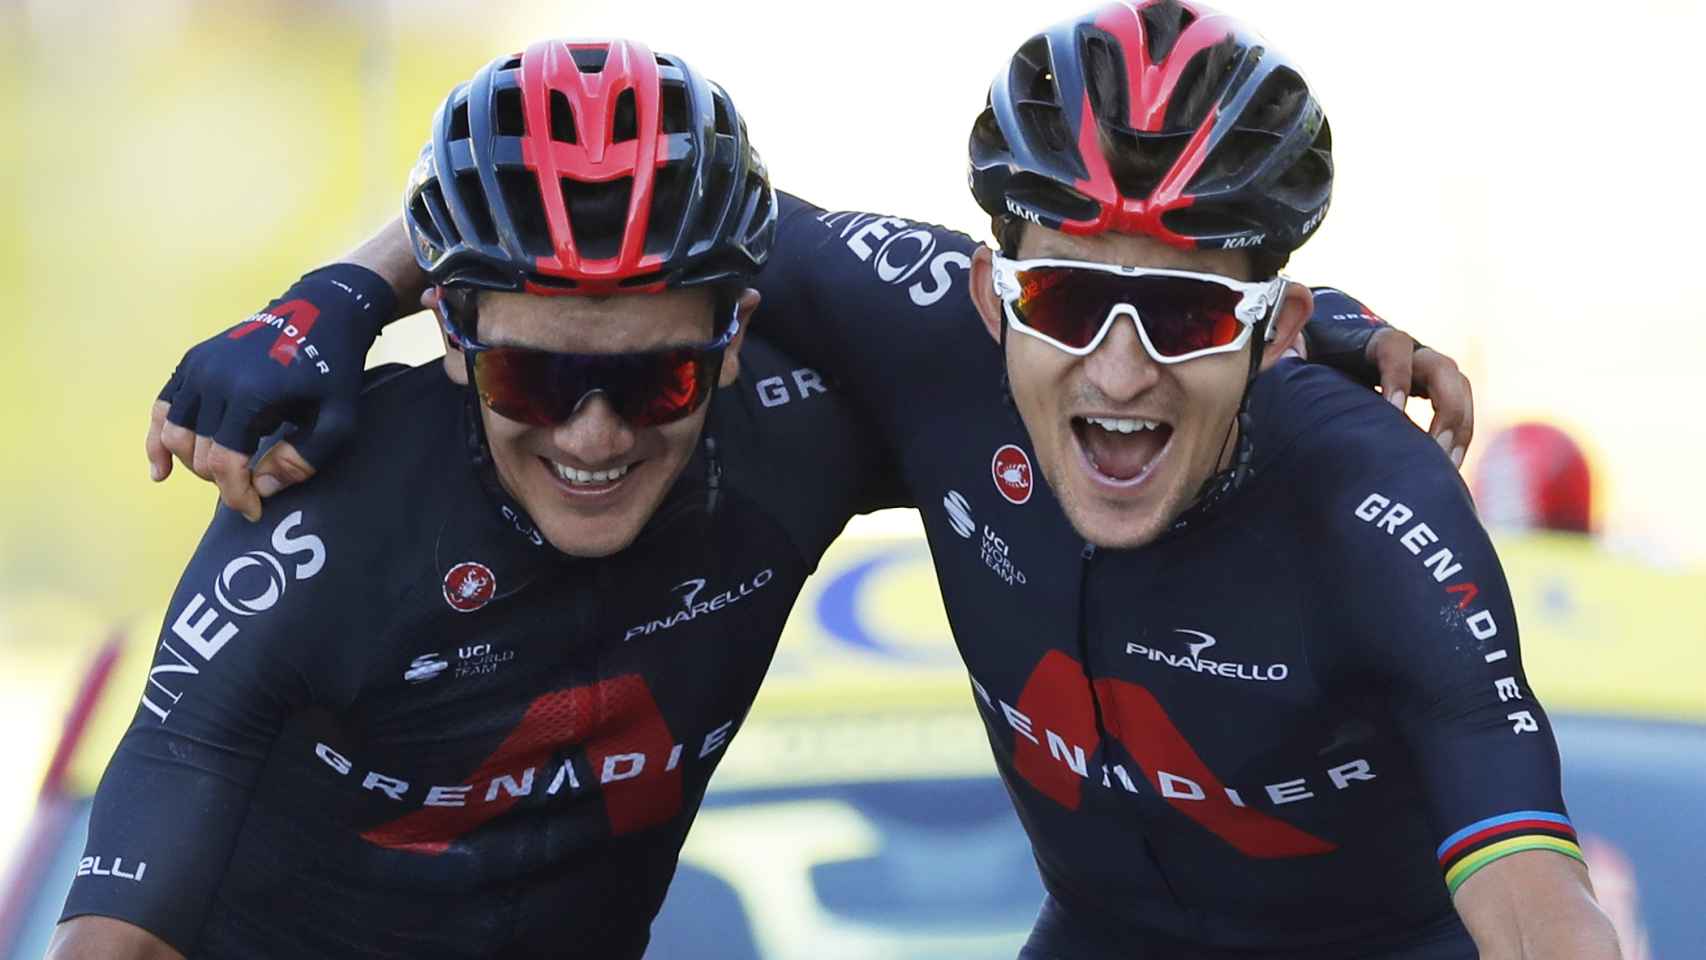 Richard Carapaz y Michal Kwiatkowski entran juntos en la etapa 19 del Tour de Francia